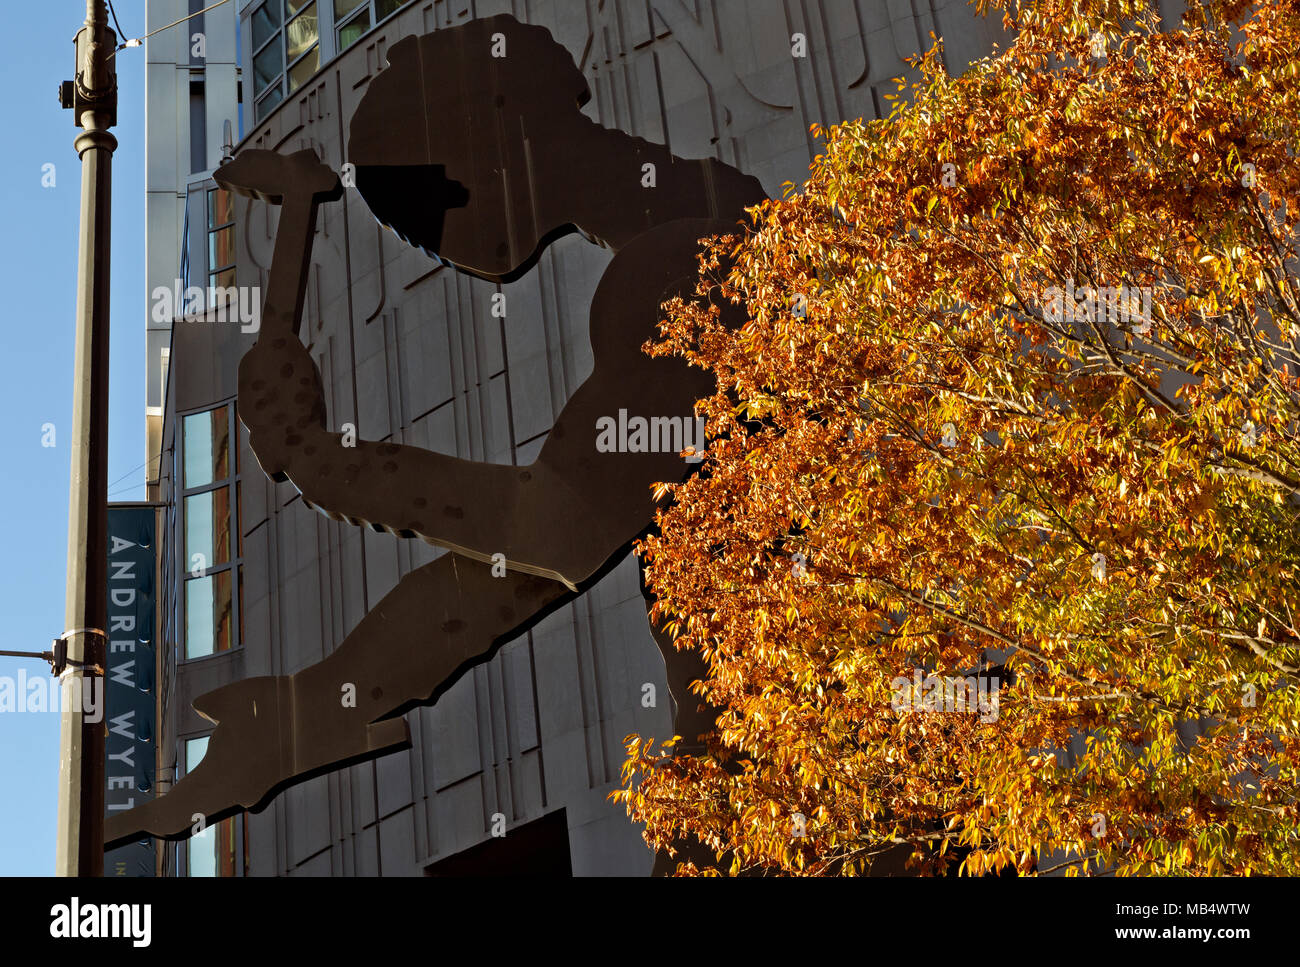 WA15047-00...WASHINGTON - die riesige Skulptur des Hammering man befindet sich vor dem Seattle Art Museum in der Innenstadt von Seattle. 2017 Stockfoto